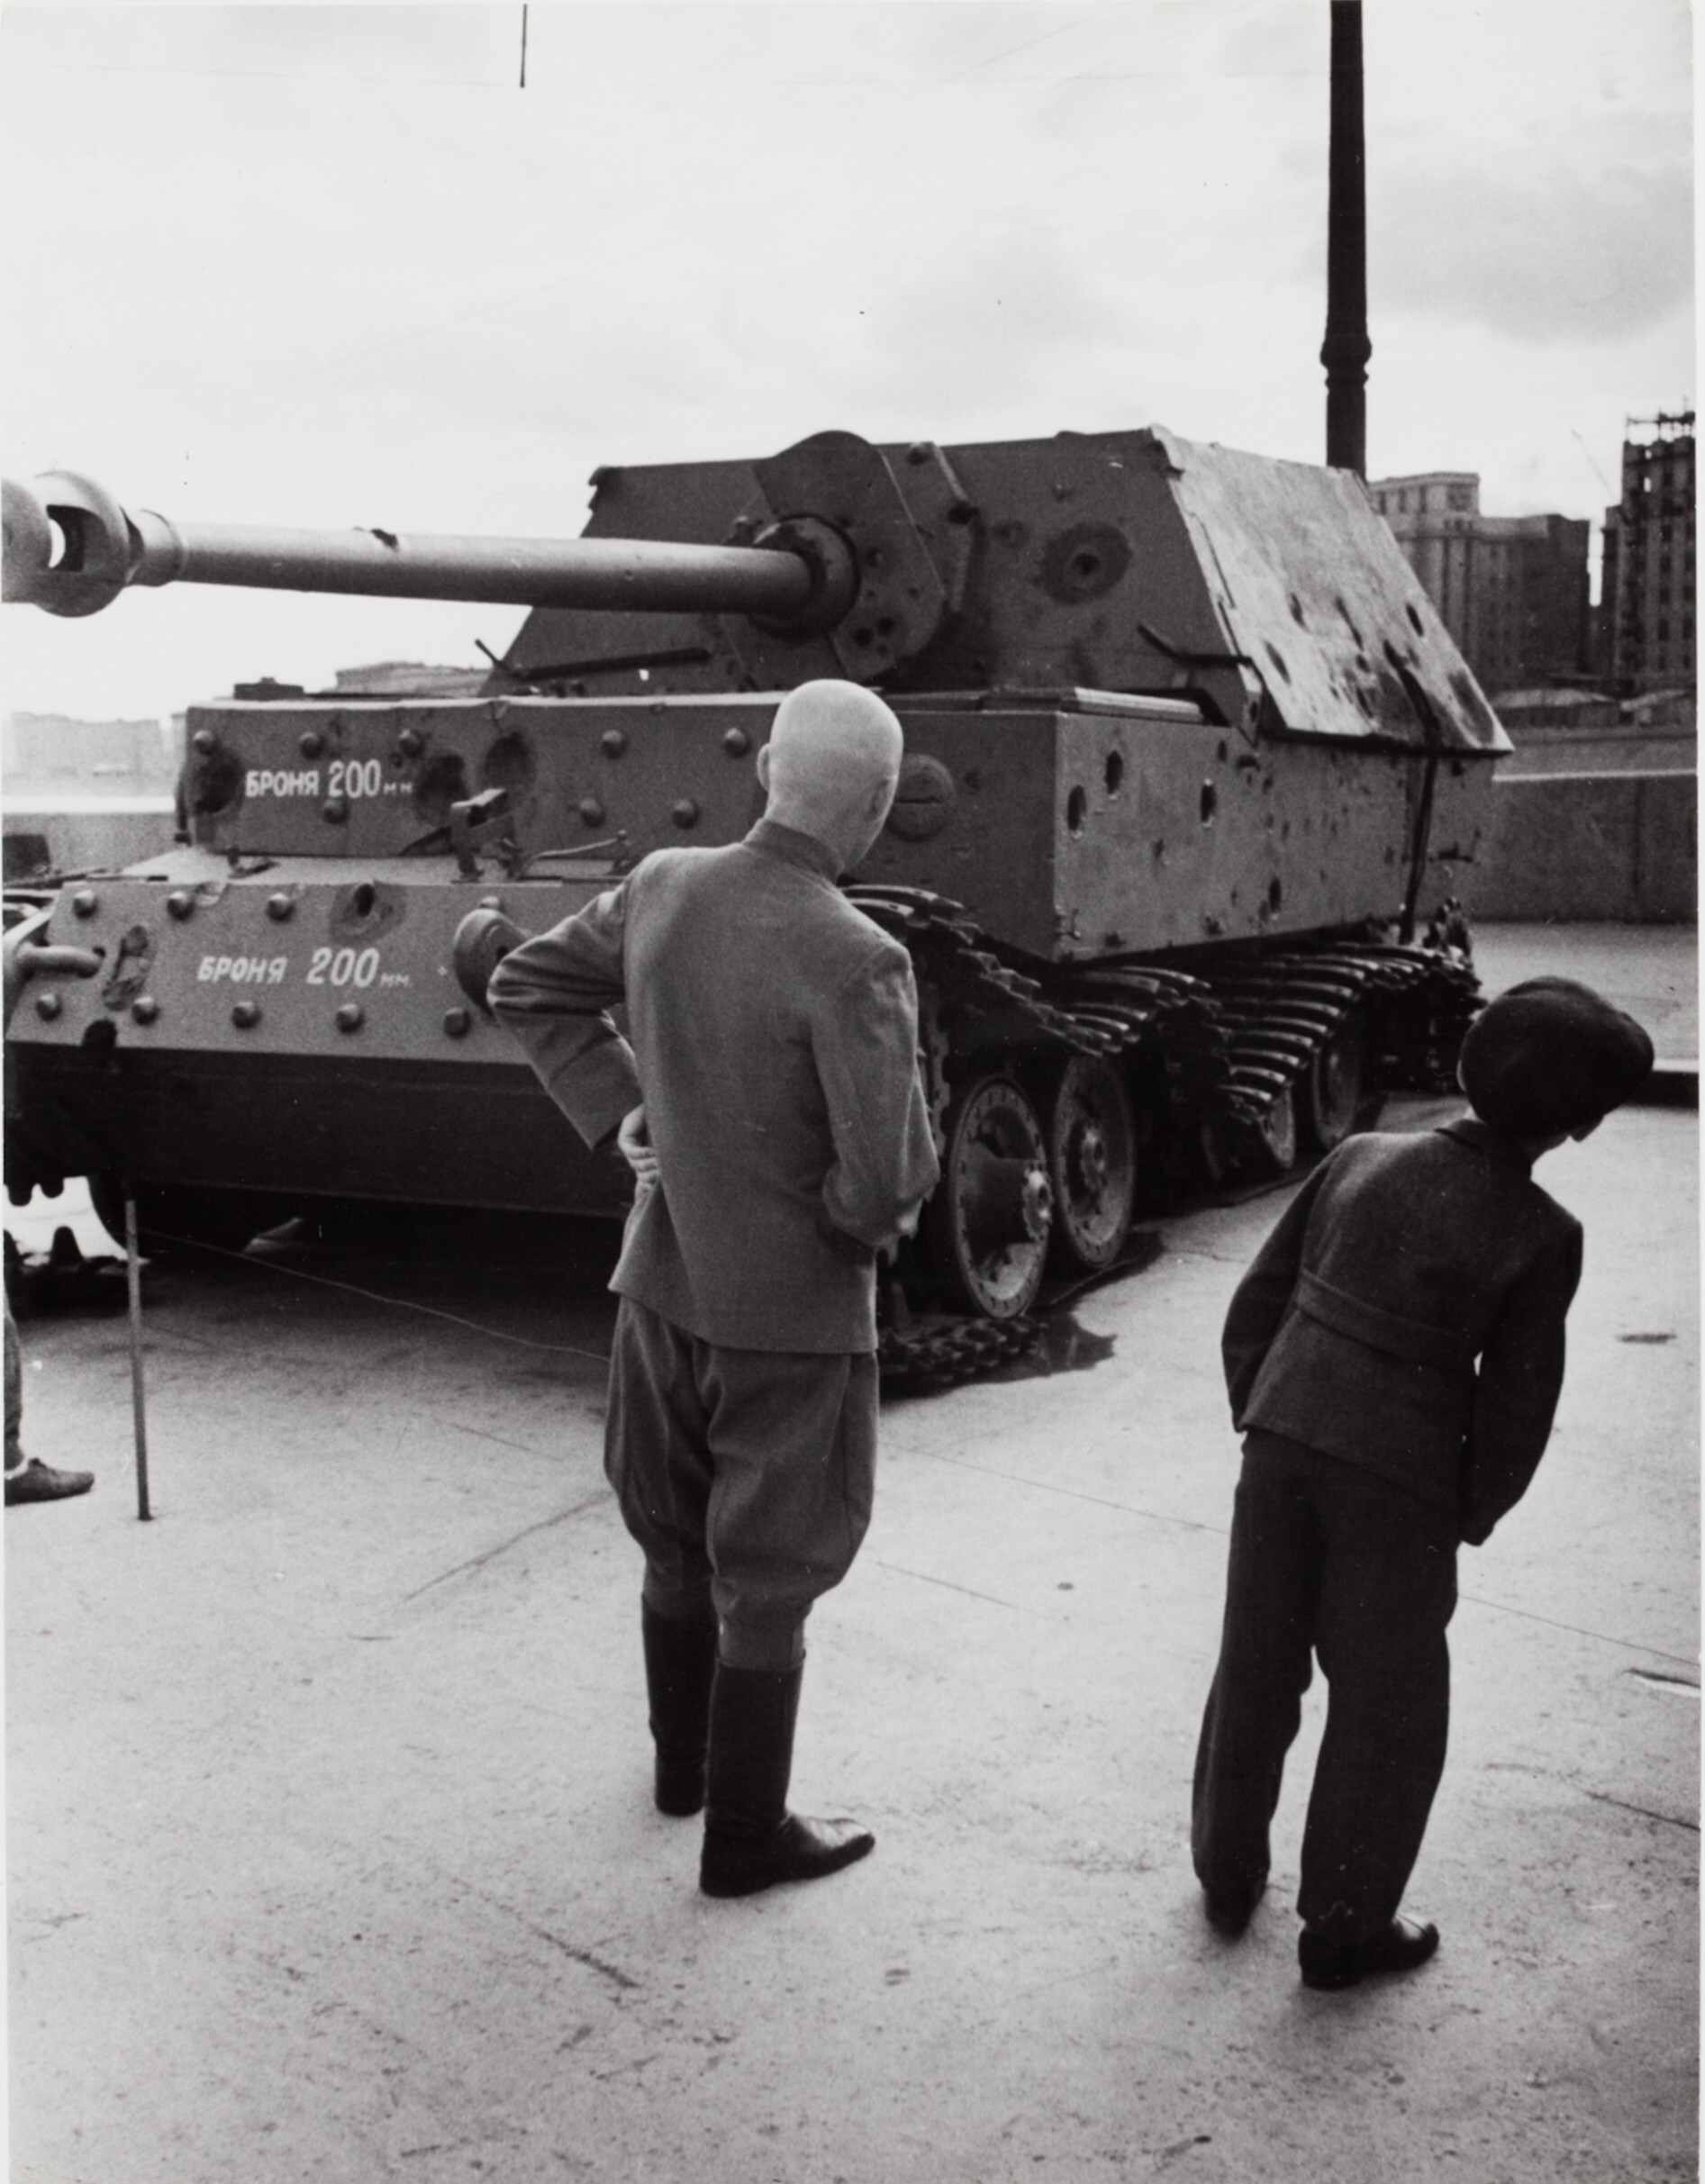 Зрители осматривают немецкий танк времен Второй мировой войны на выставке военных трофеев, Москва, 1947 год. Фотограф Роберт Капа